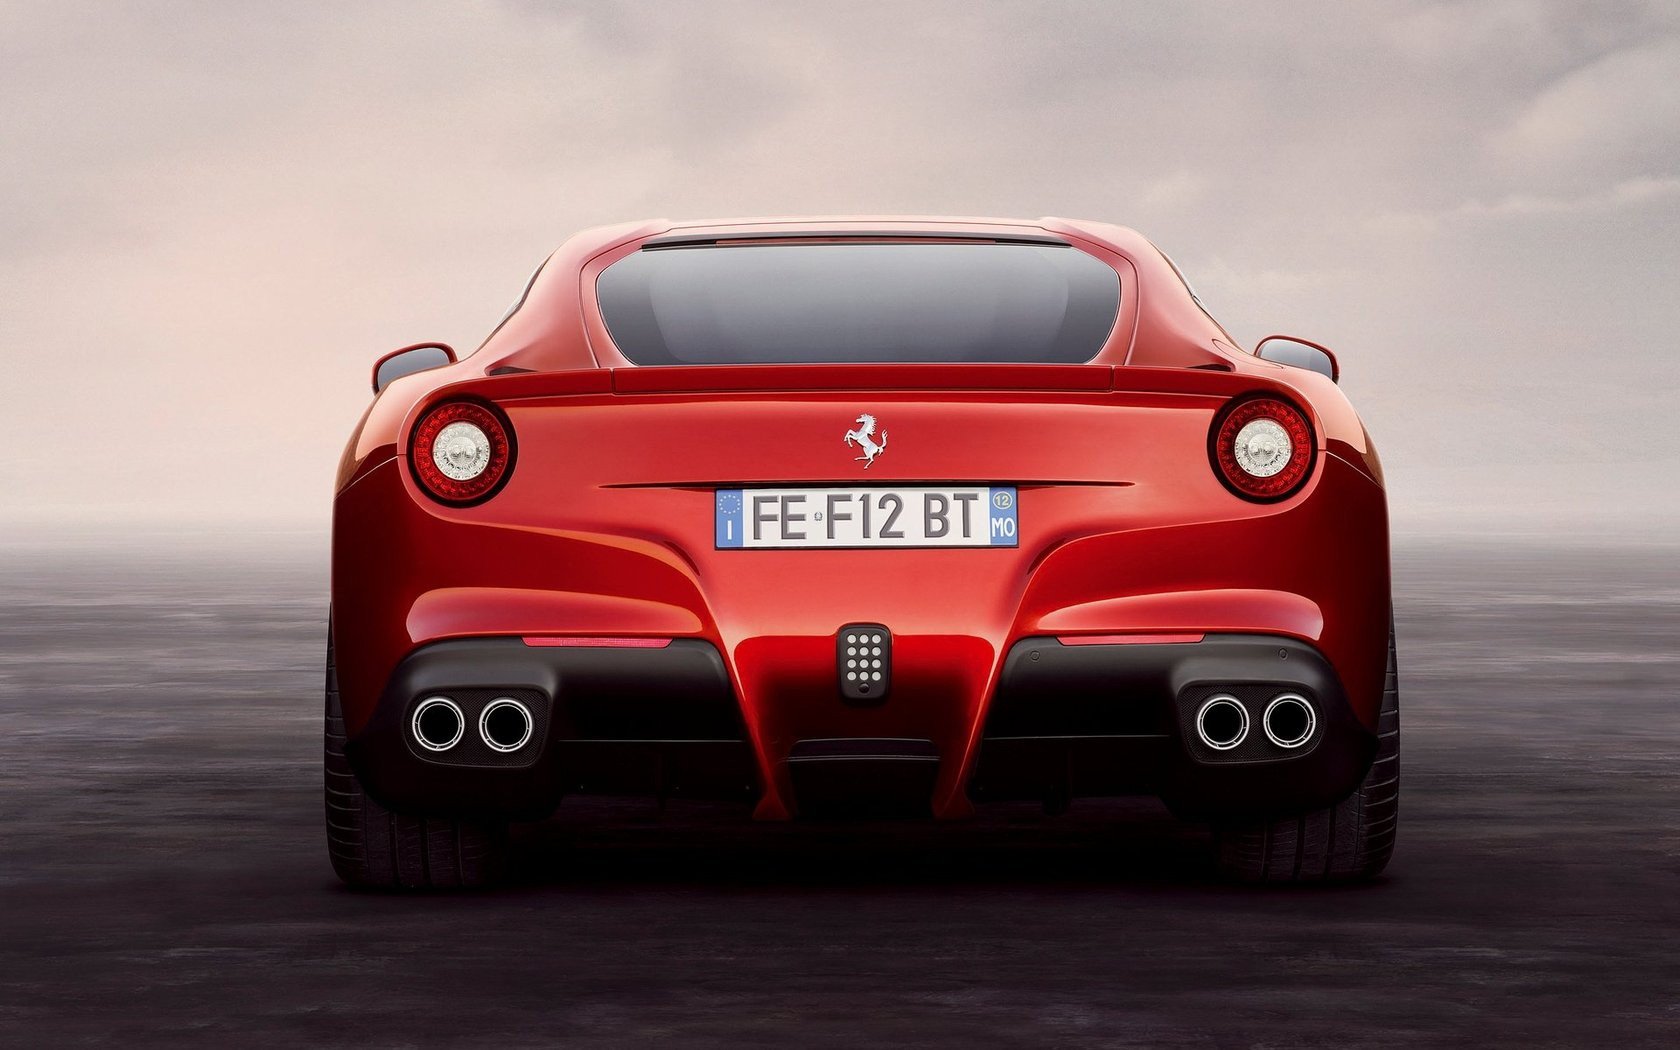 High resolution Ferrari F12 Berlinetta hd 1680x1050 wallpaper ID:347381 for PC